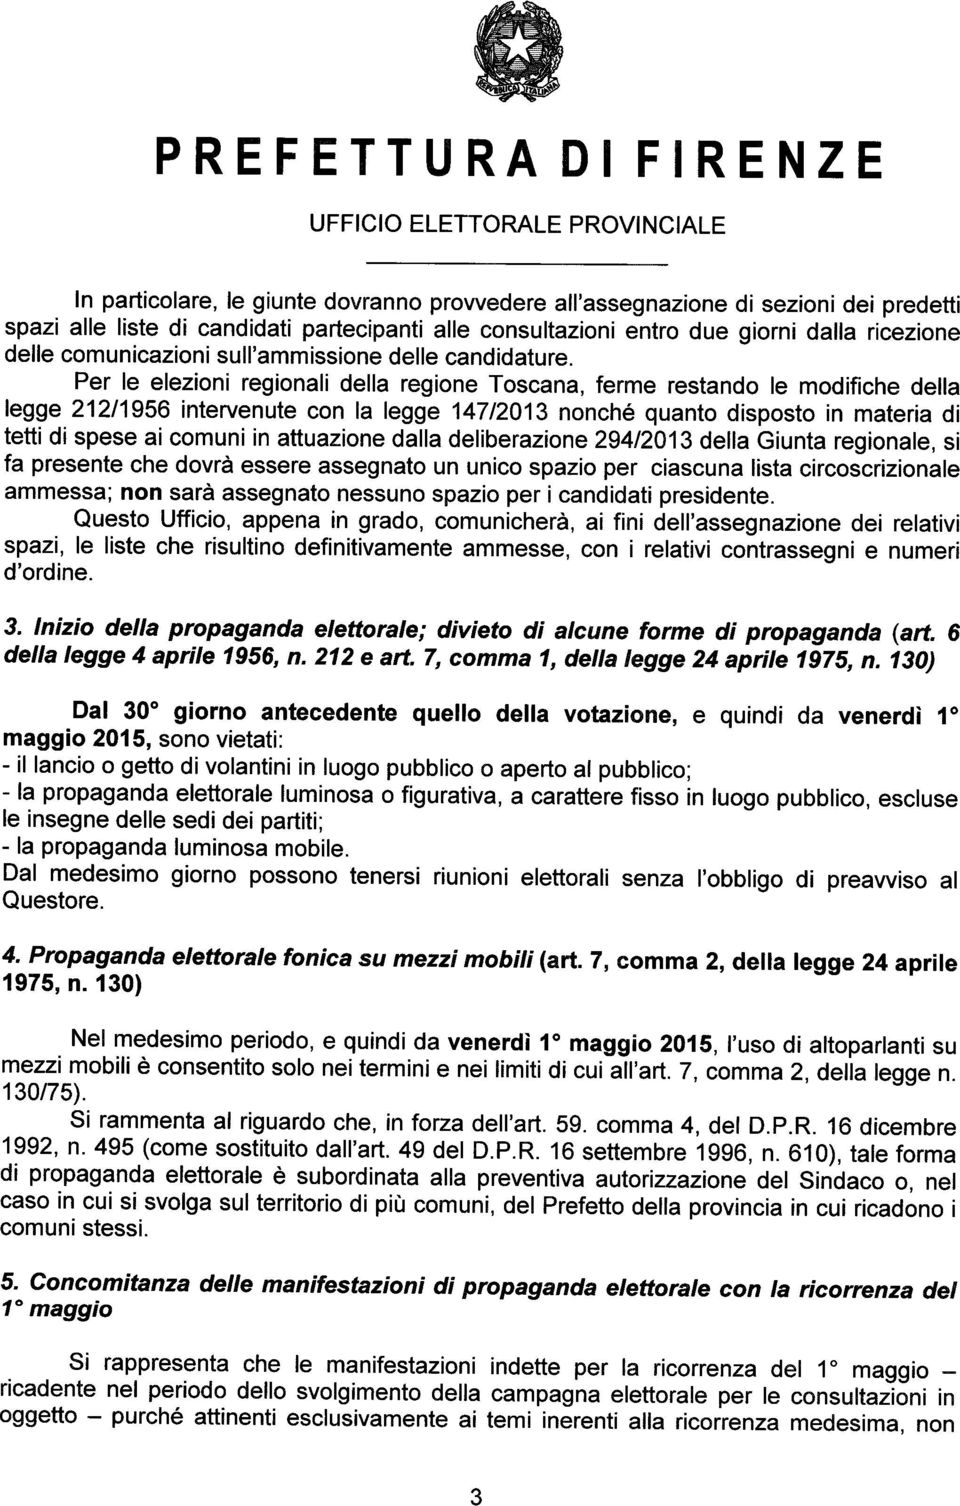 Per le elezioni regionali della regione Toscana, ferme restando le modifiche della legge 21211956 intervenute con la legge 14712013 nonch6 quanto disposto in materia di tetti di spese ai comuni in